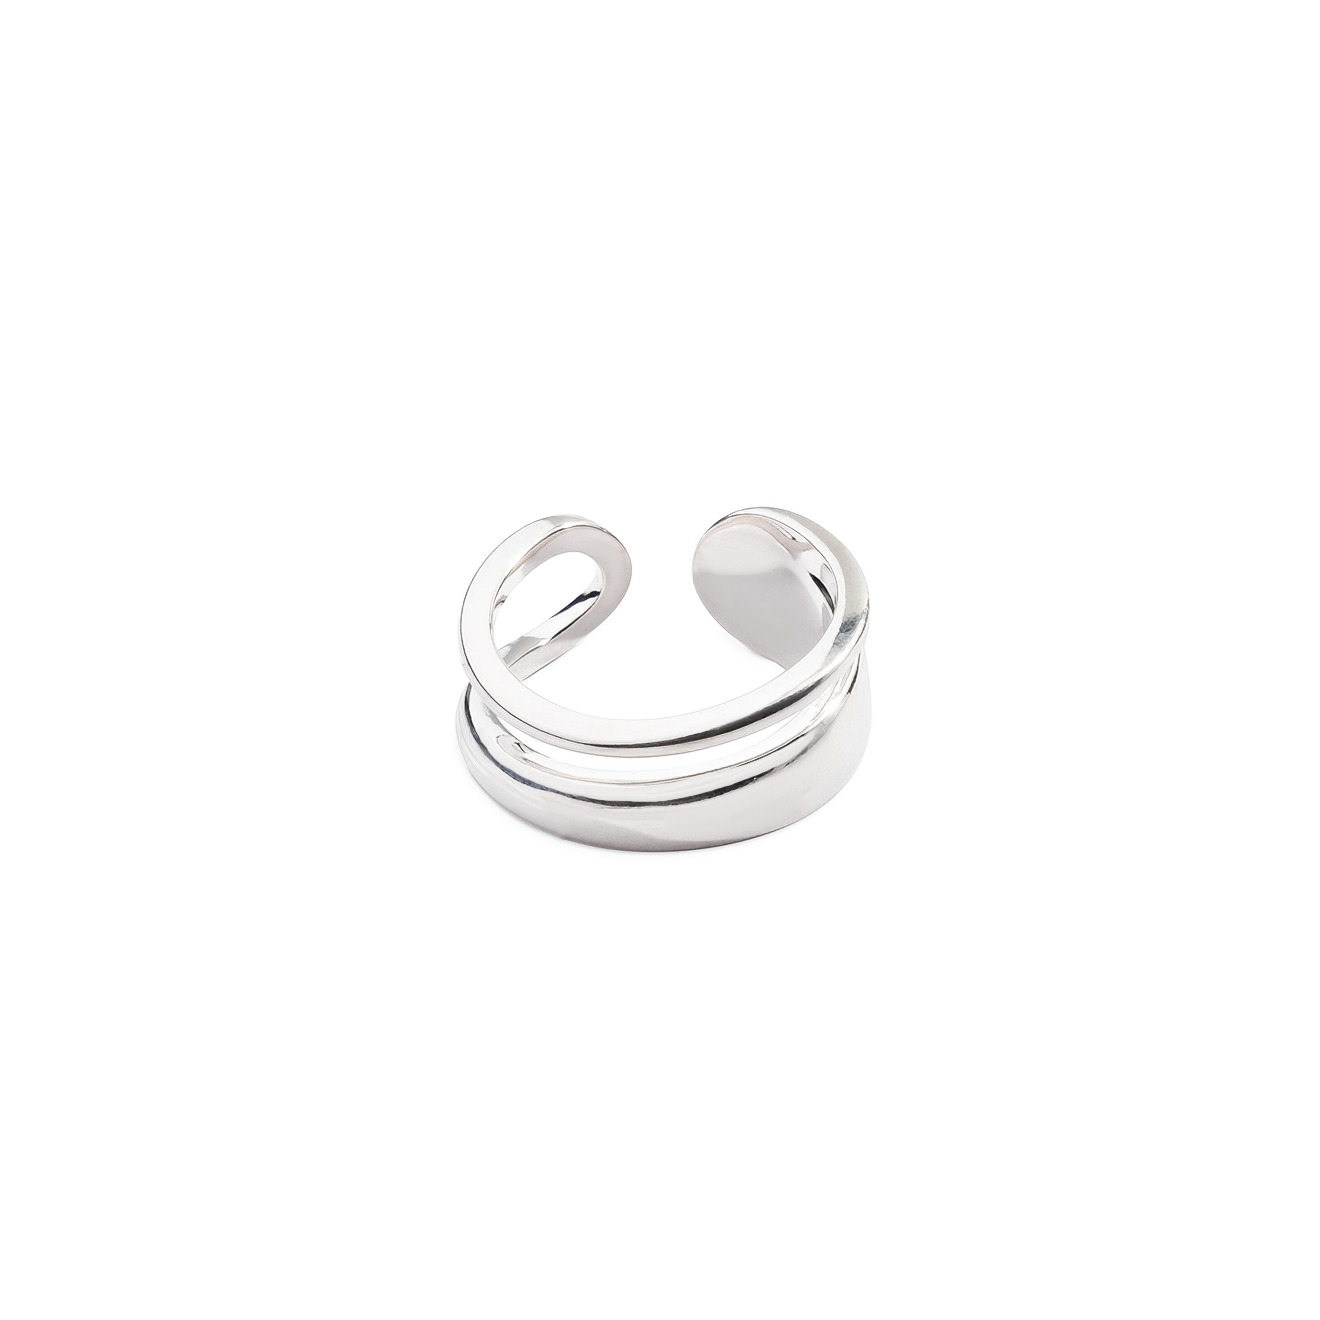 Philippe Audibert Незамкнутое двойное кольцо, покрытое серебром lisa smith незамкнутое золотистое кольцо волна